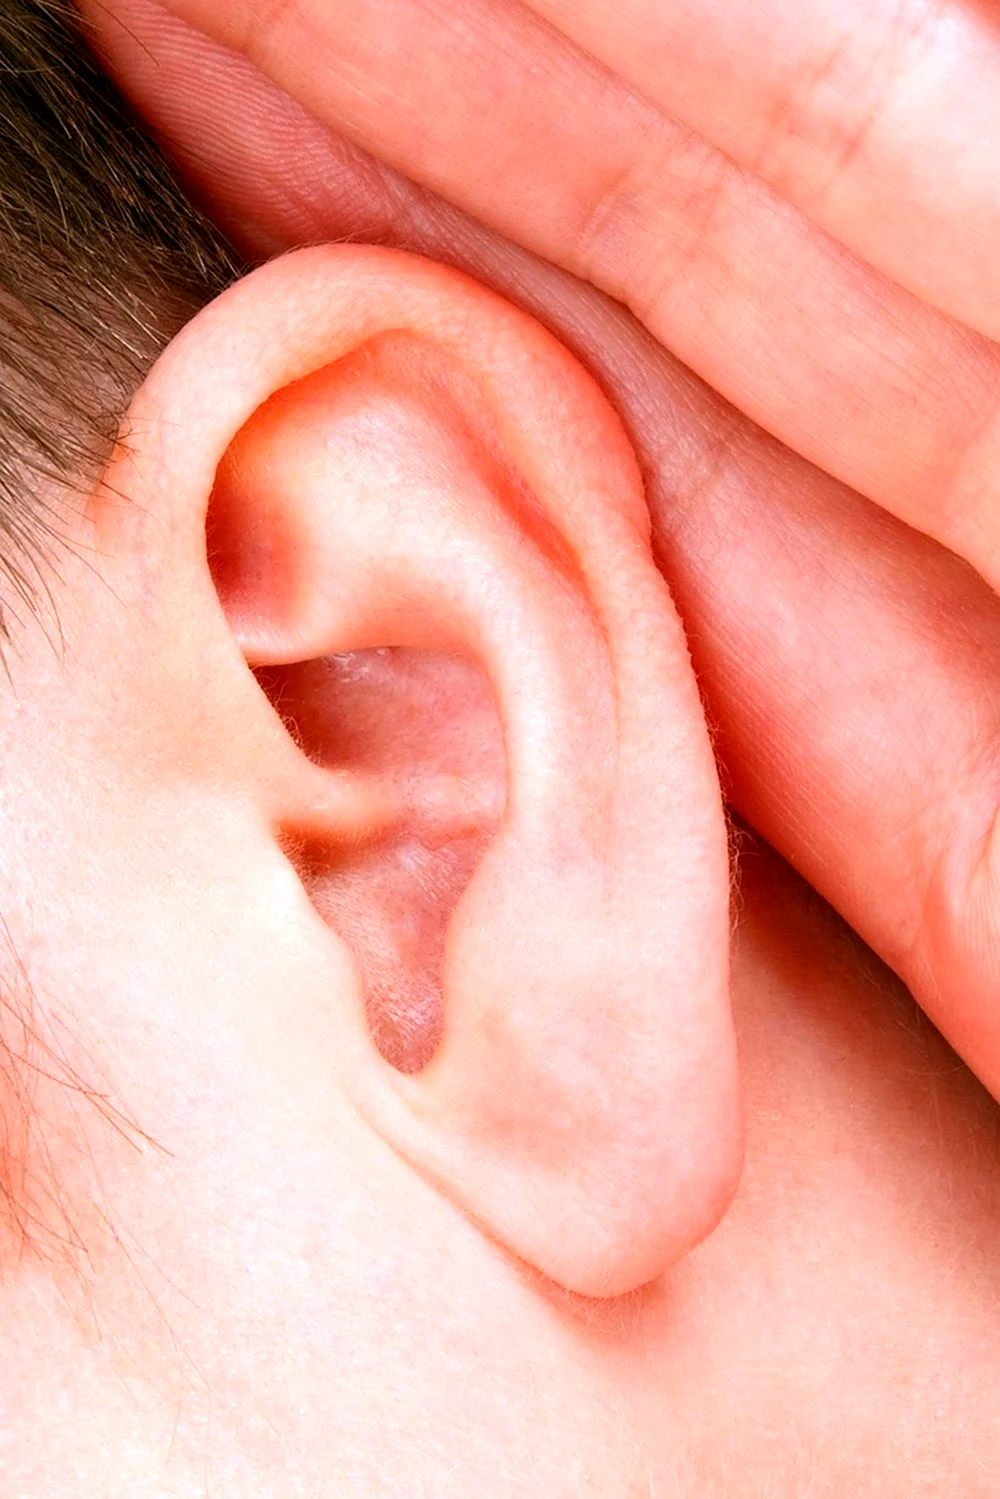 Гнойный отит внутреннего уха